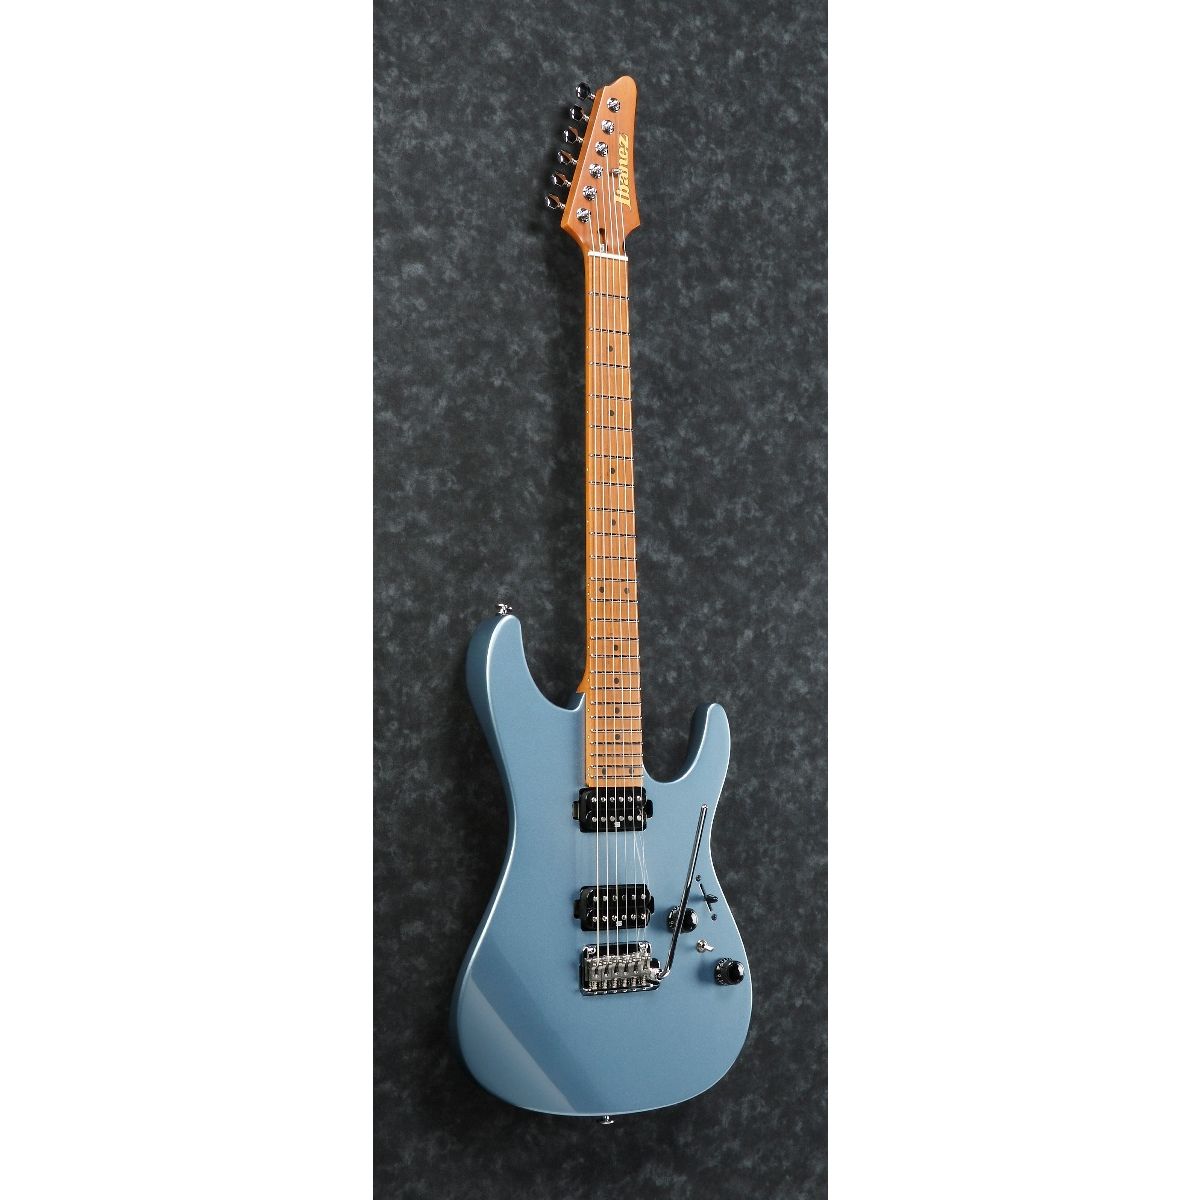 Ibanez AZ Prestige Ice Blue Metallic AZ2402 ICM Electric Guitar w/Case